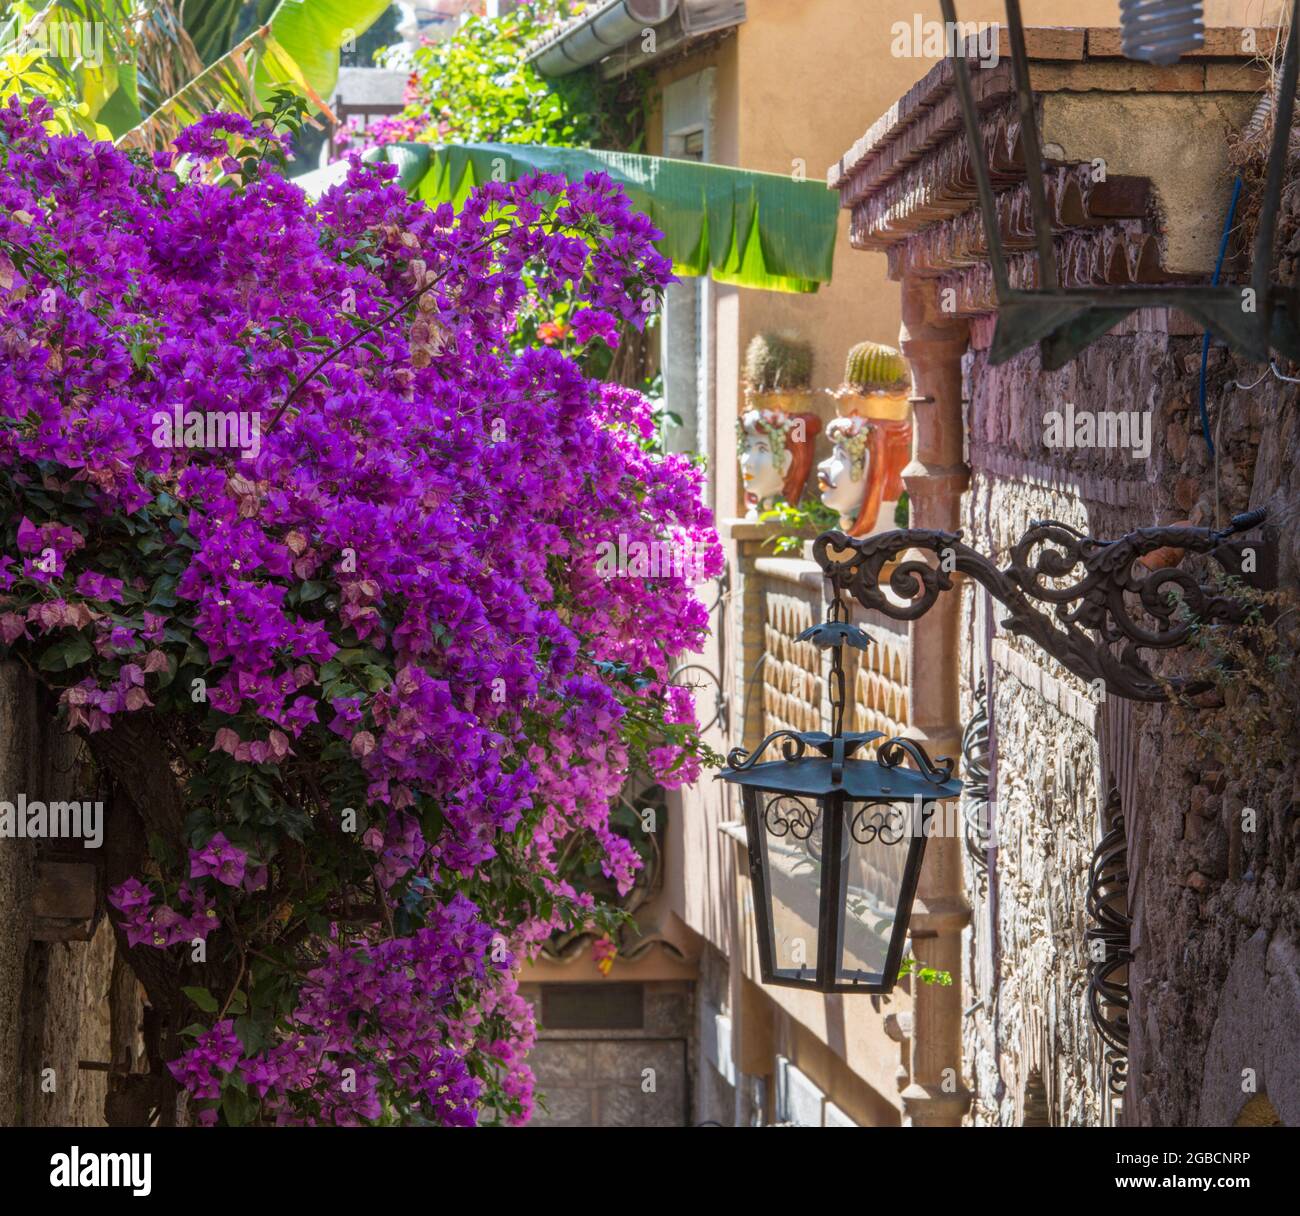 Taormina, Messina, Sicilia, Italia. Tipico vicolo fiorito di corso Umberto i, alto muro di pietra drappeggiato in buganvillea rosa mozzafiato. Foto Stock